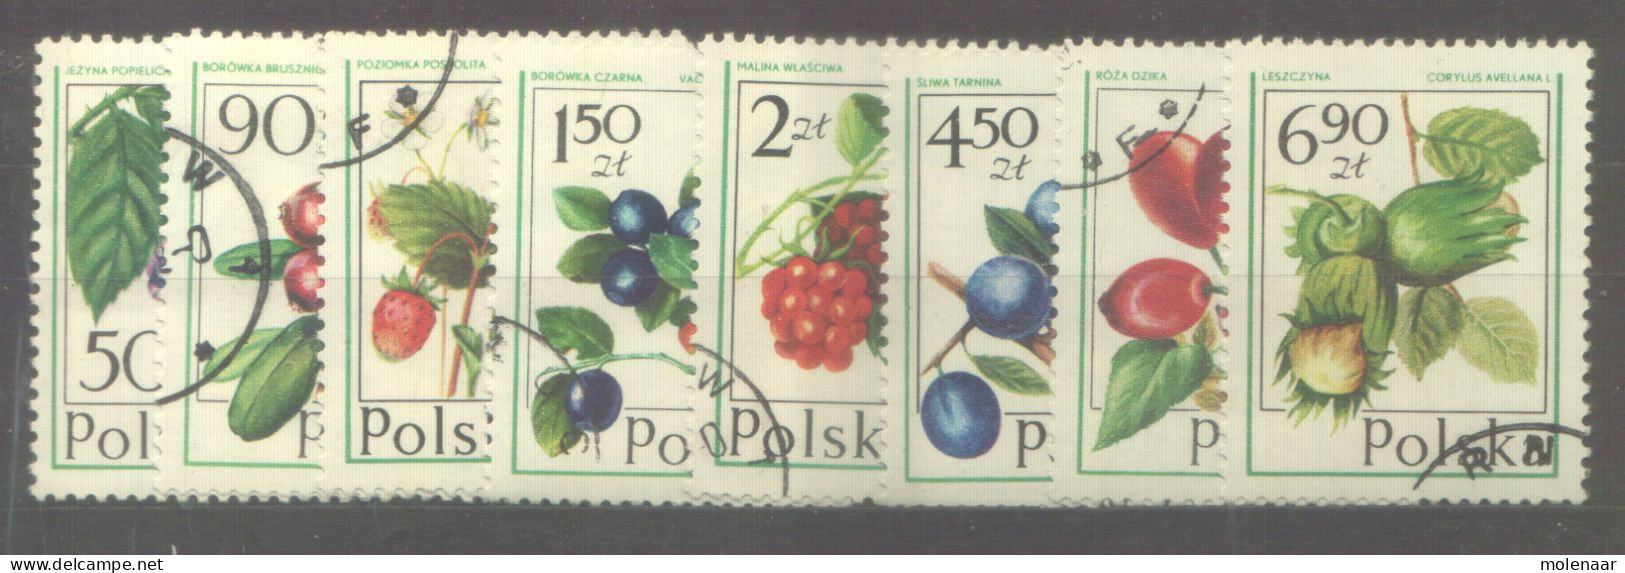 Postzegels > Europa > Polen > 1944-.... Republiek > 1971-80 > Gebruikt No. 2484-2491 (24140) - Usati